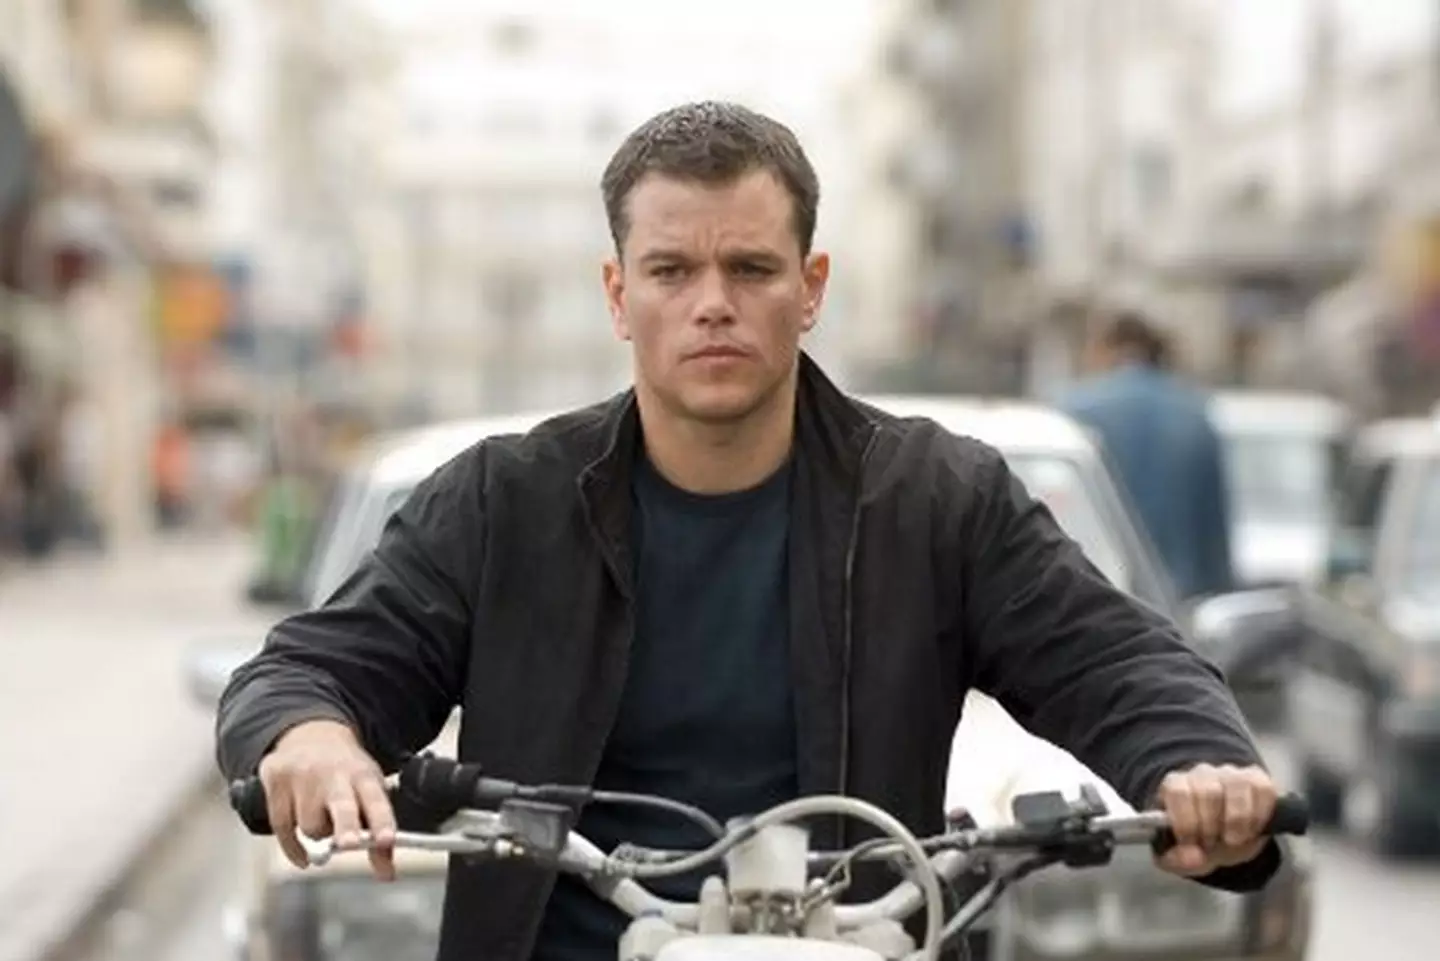 He also starred in The Bourne Ultimatum alongside megastar Matt Damon. [